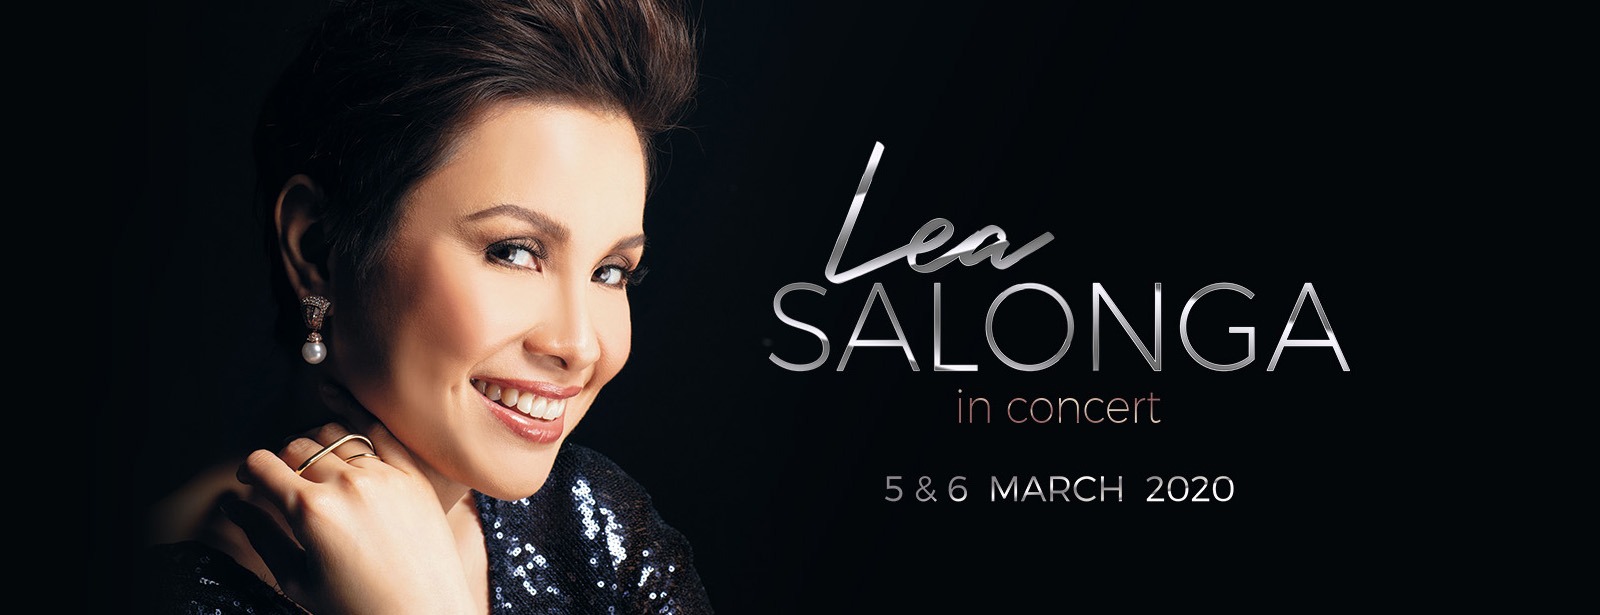 Lea Salonga Concert at Dubai Opera - Coming Soon in UAE